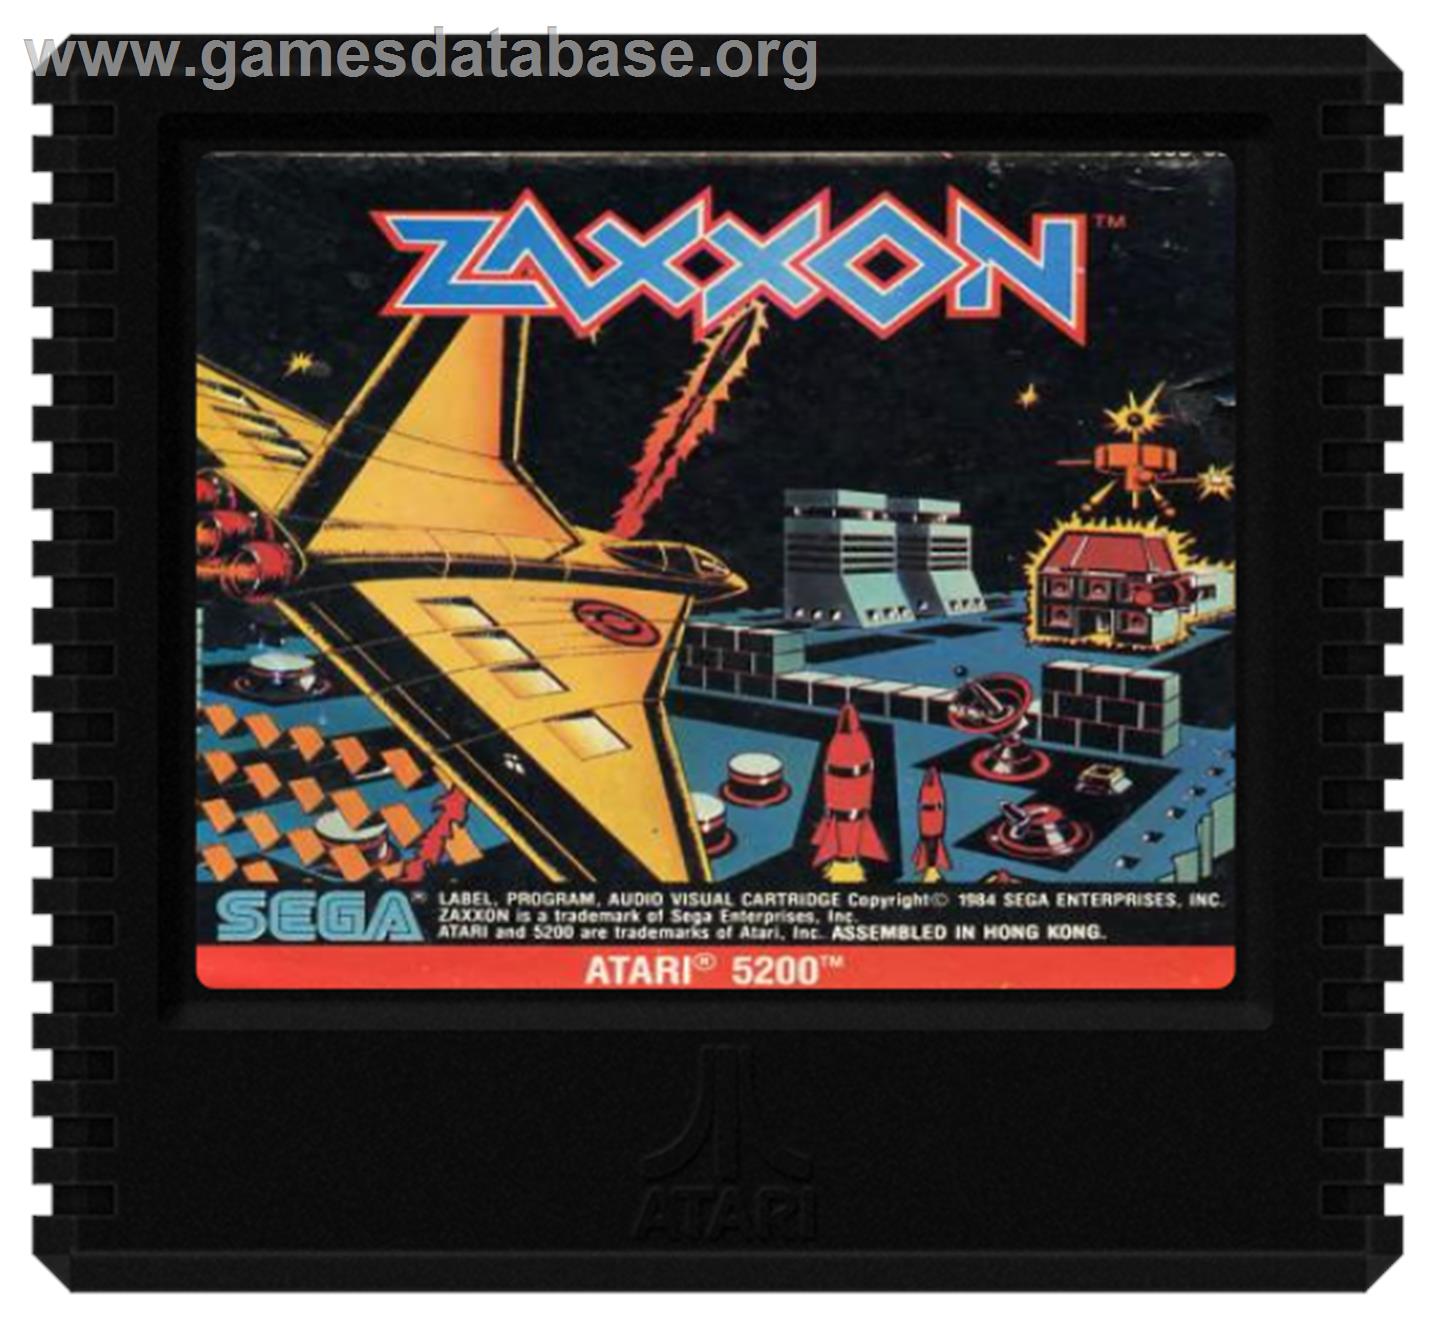 Zaxxon - Atari 5200 - Artwork - Cartridge